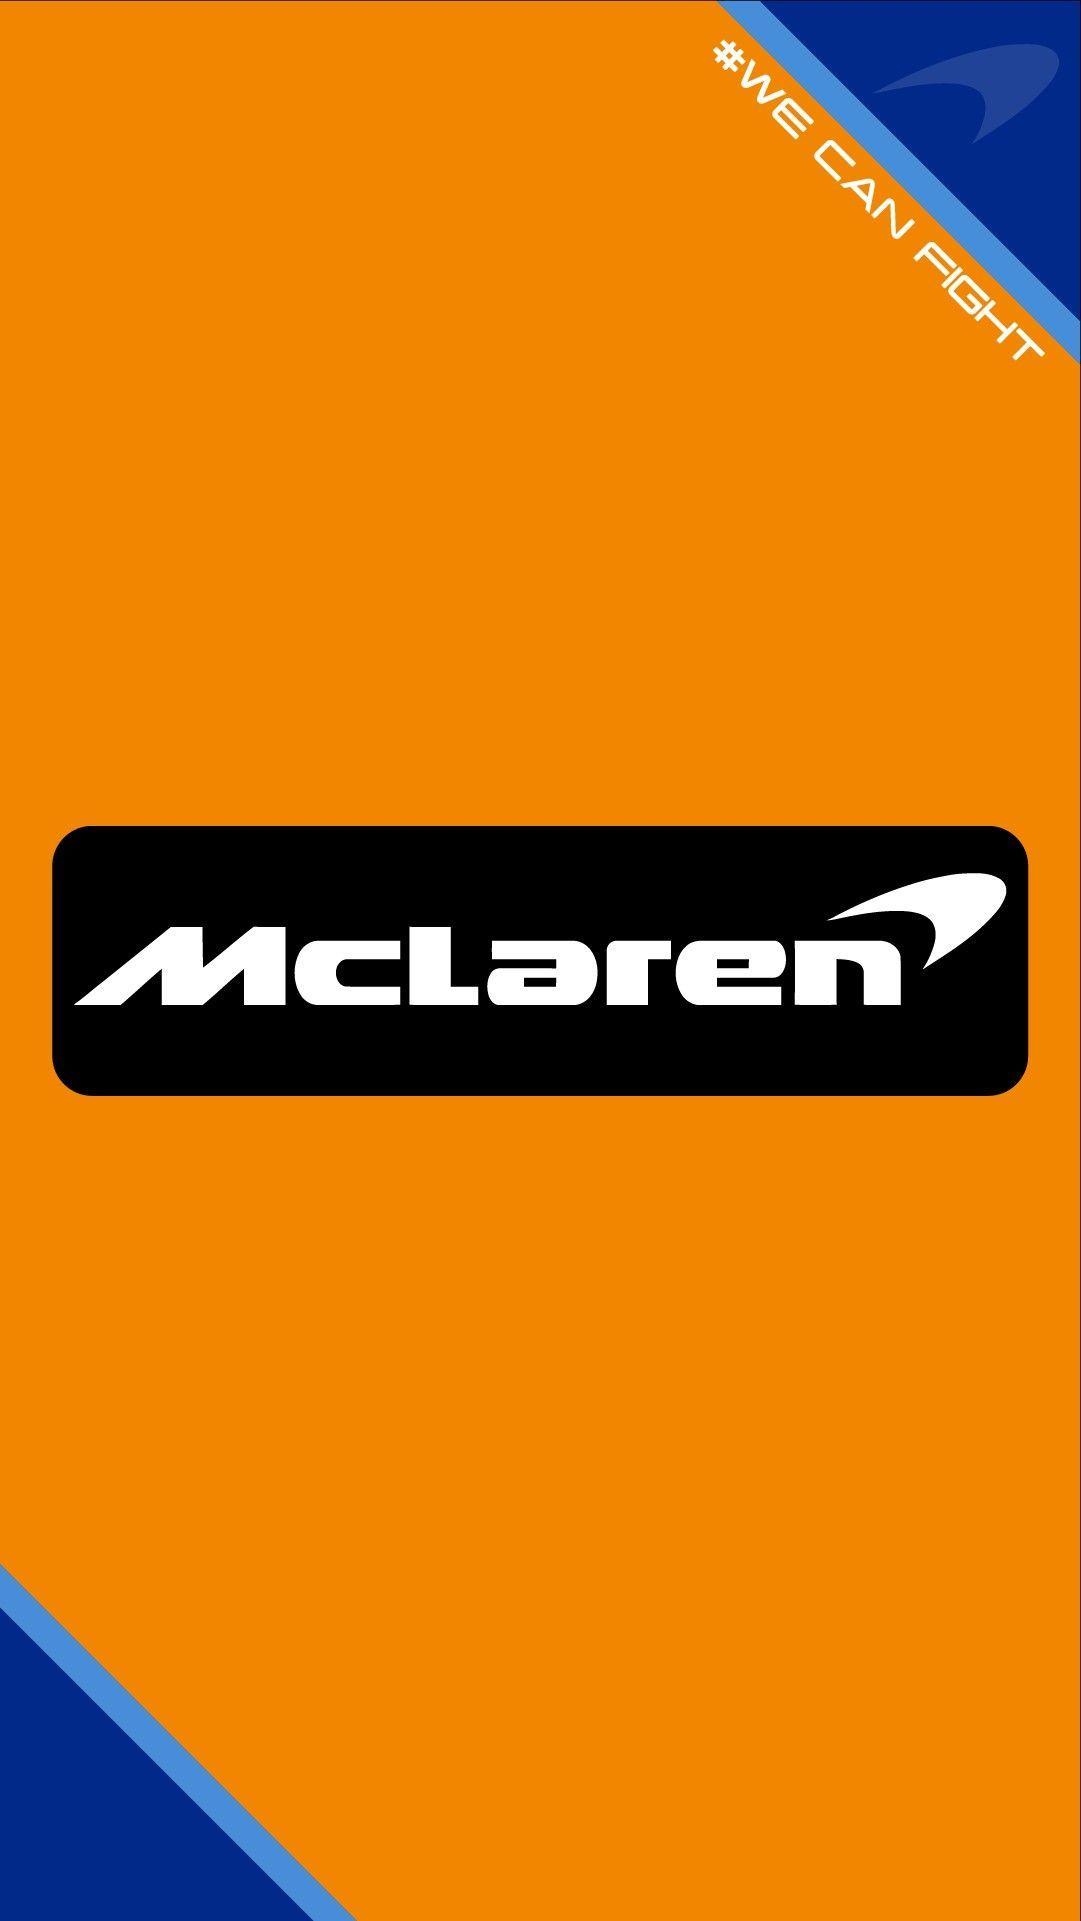 Orange McLaren F1 Logo - Mclaren f1 team wallpaper 2018 #mclaren #formula1 #f1 #renault ...